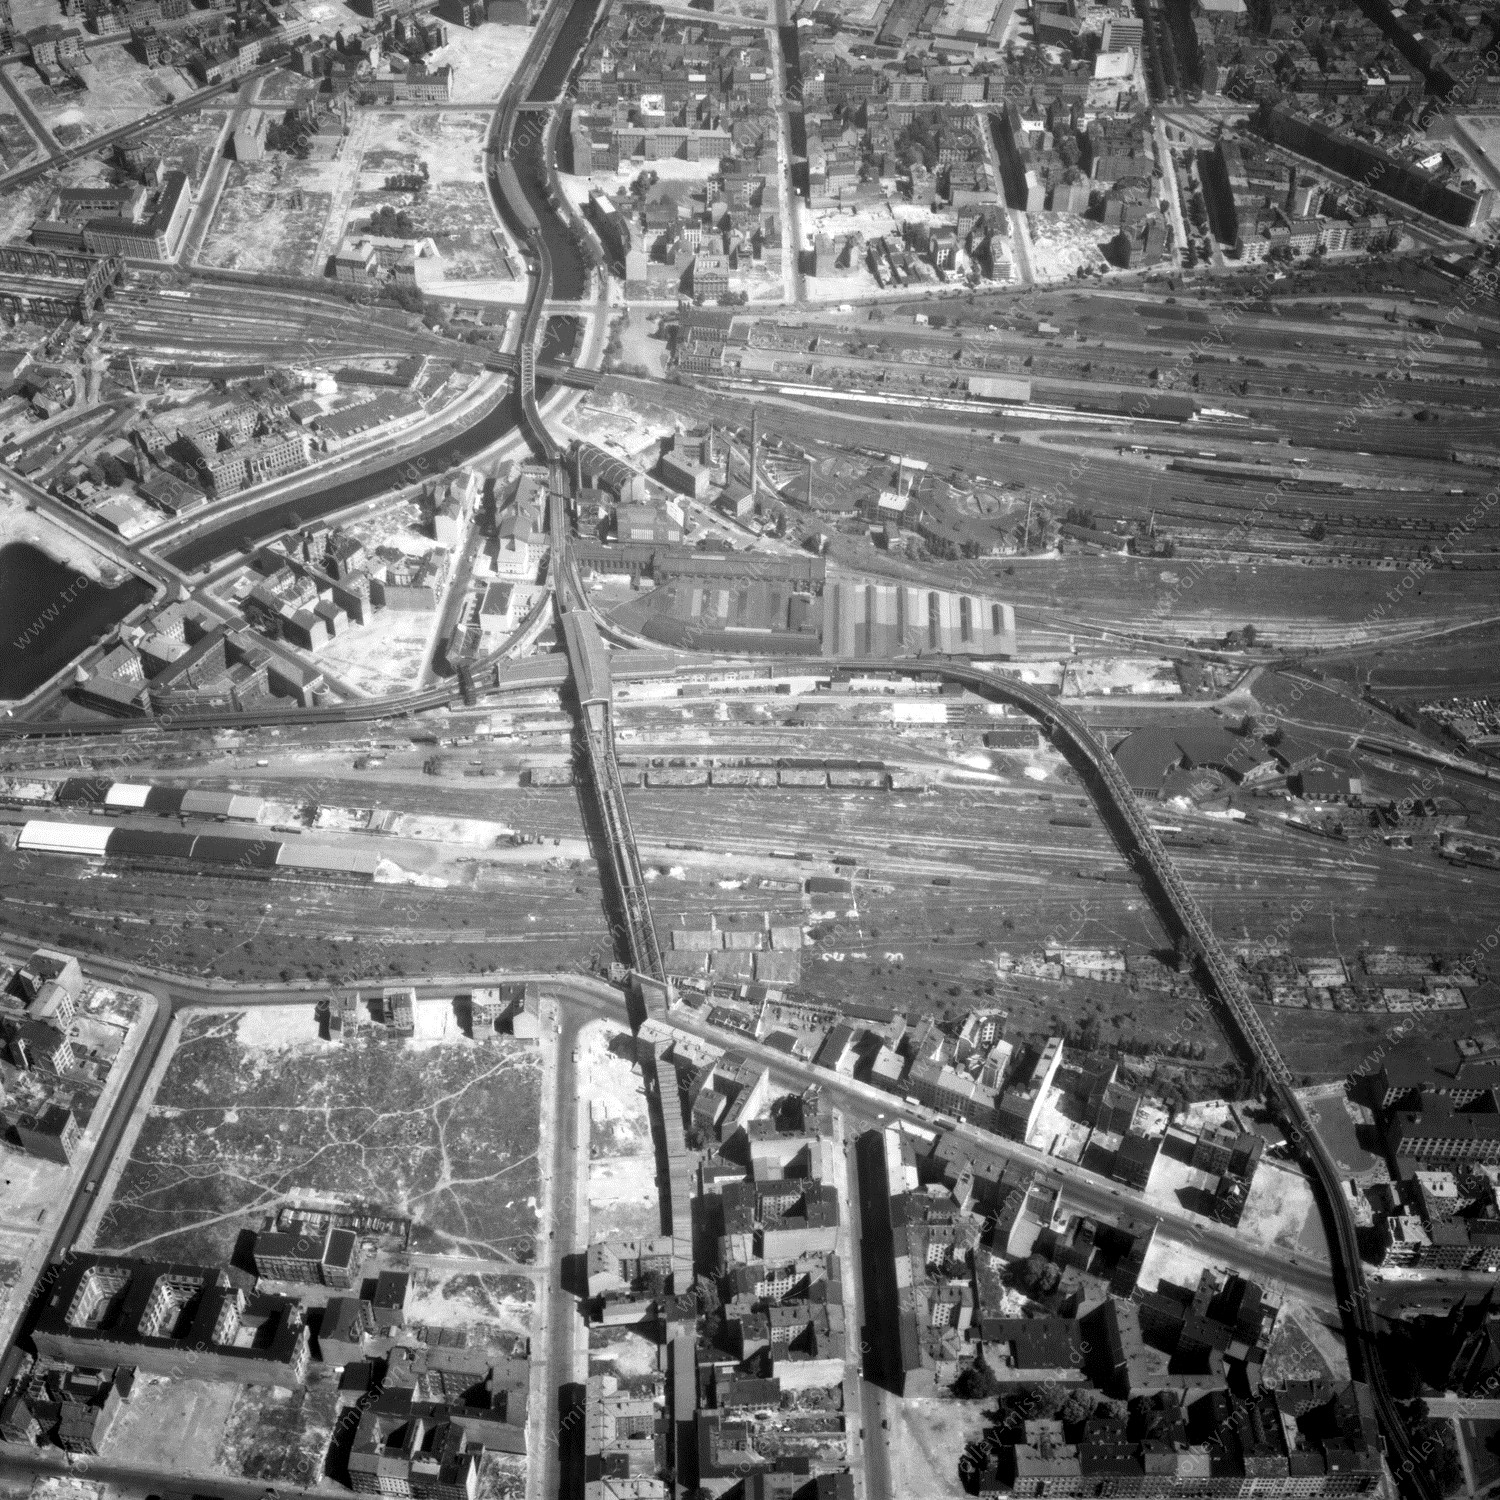 Alte Fotos und Luftbilder von Berlin - Luftbildaufnahme Nr. 06 - Historische Luftaufnahmen von West-Berlin aus dem Jahr 1954 - Flugstrecke Hotel